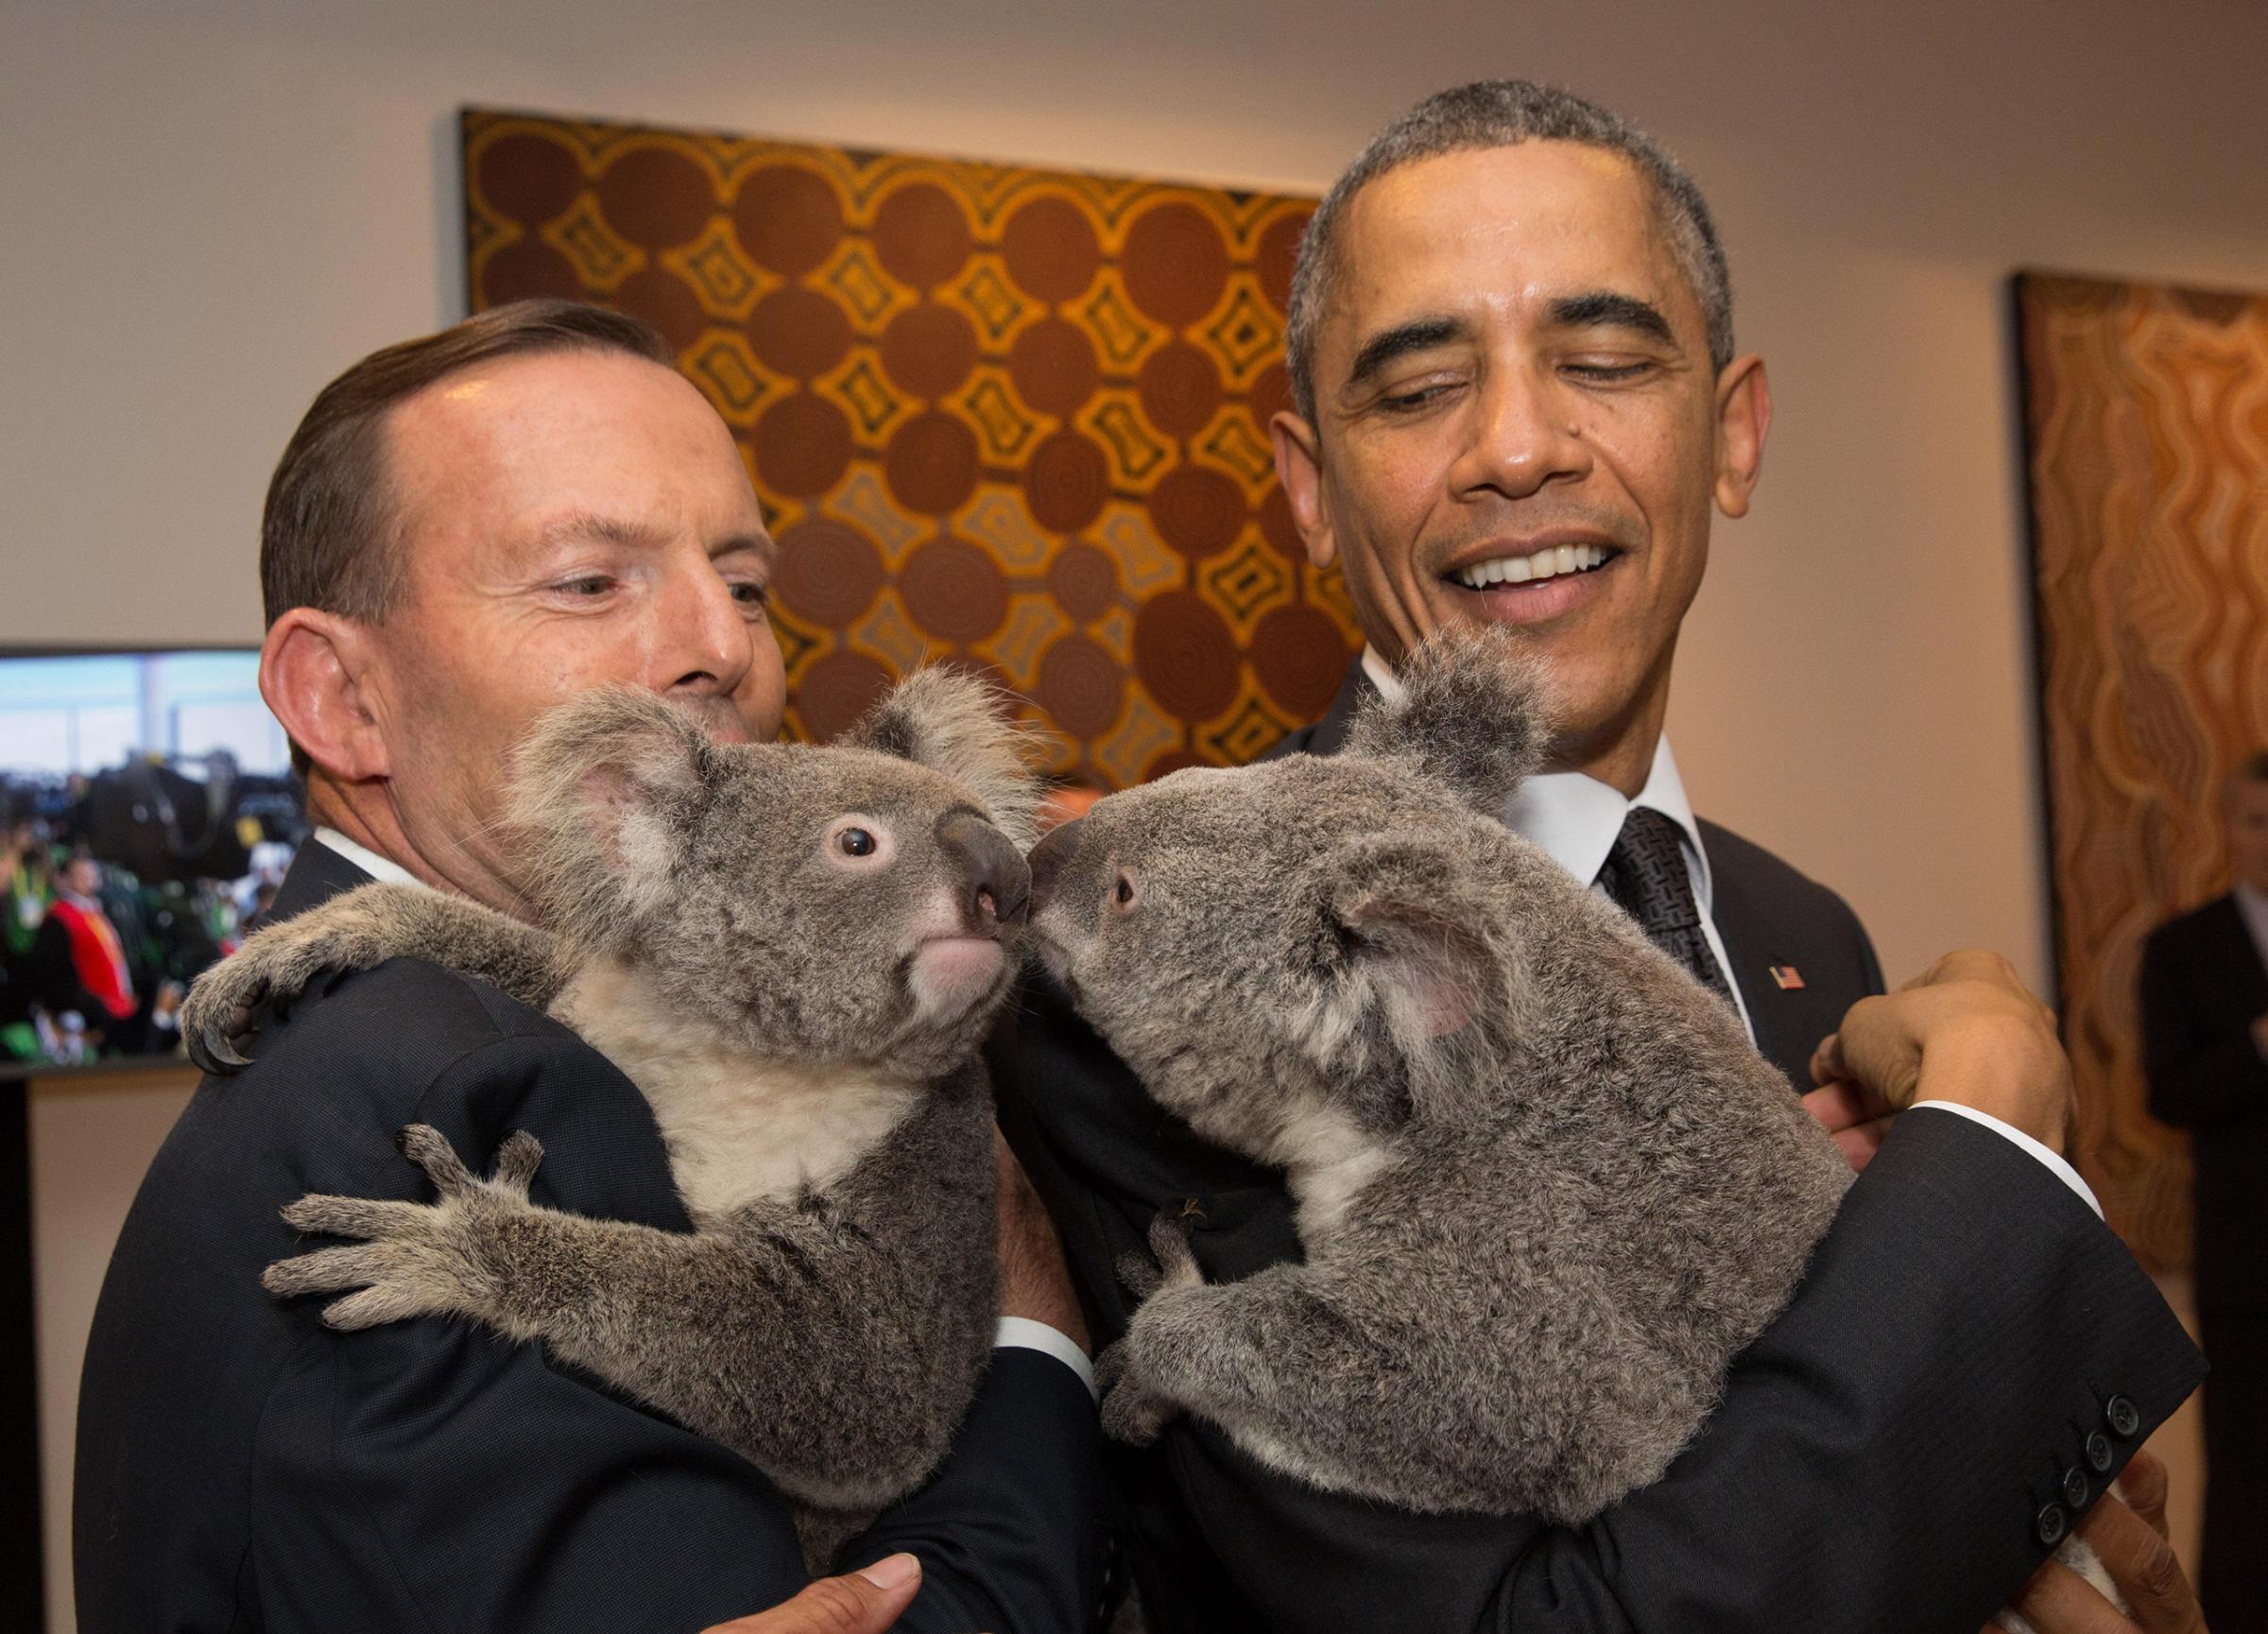 Australia's Prime Minister Tony Abbott and United States' President Barack Obama meet Jimbelung the koala before the start of the first G20 meeting on Nov. 15, 2014 in Brisbane, Australia.